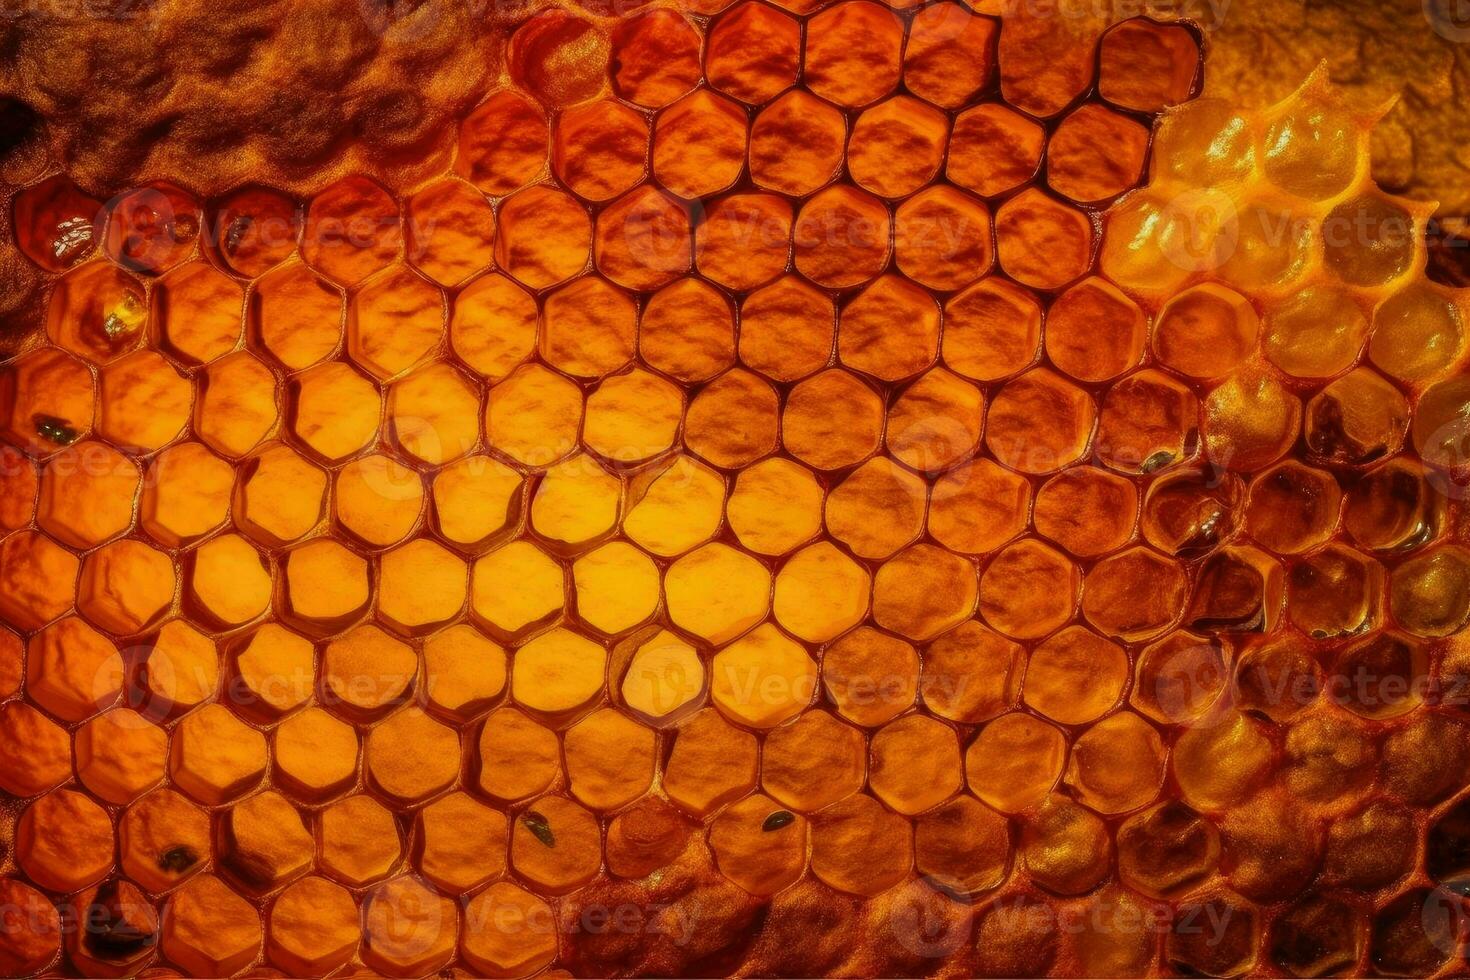 honing cellen en werken bijen ai generatief foto